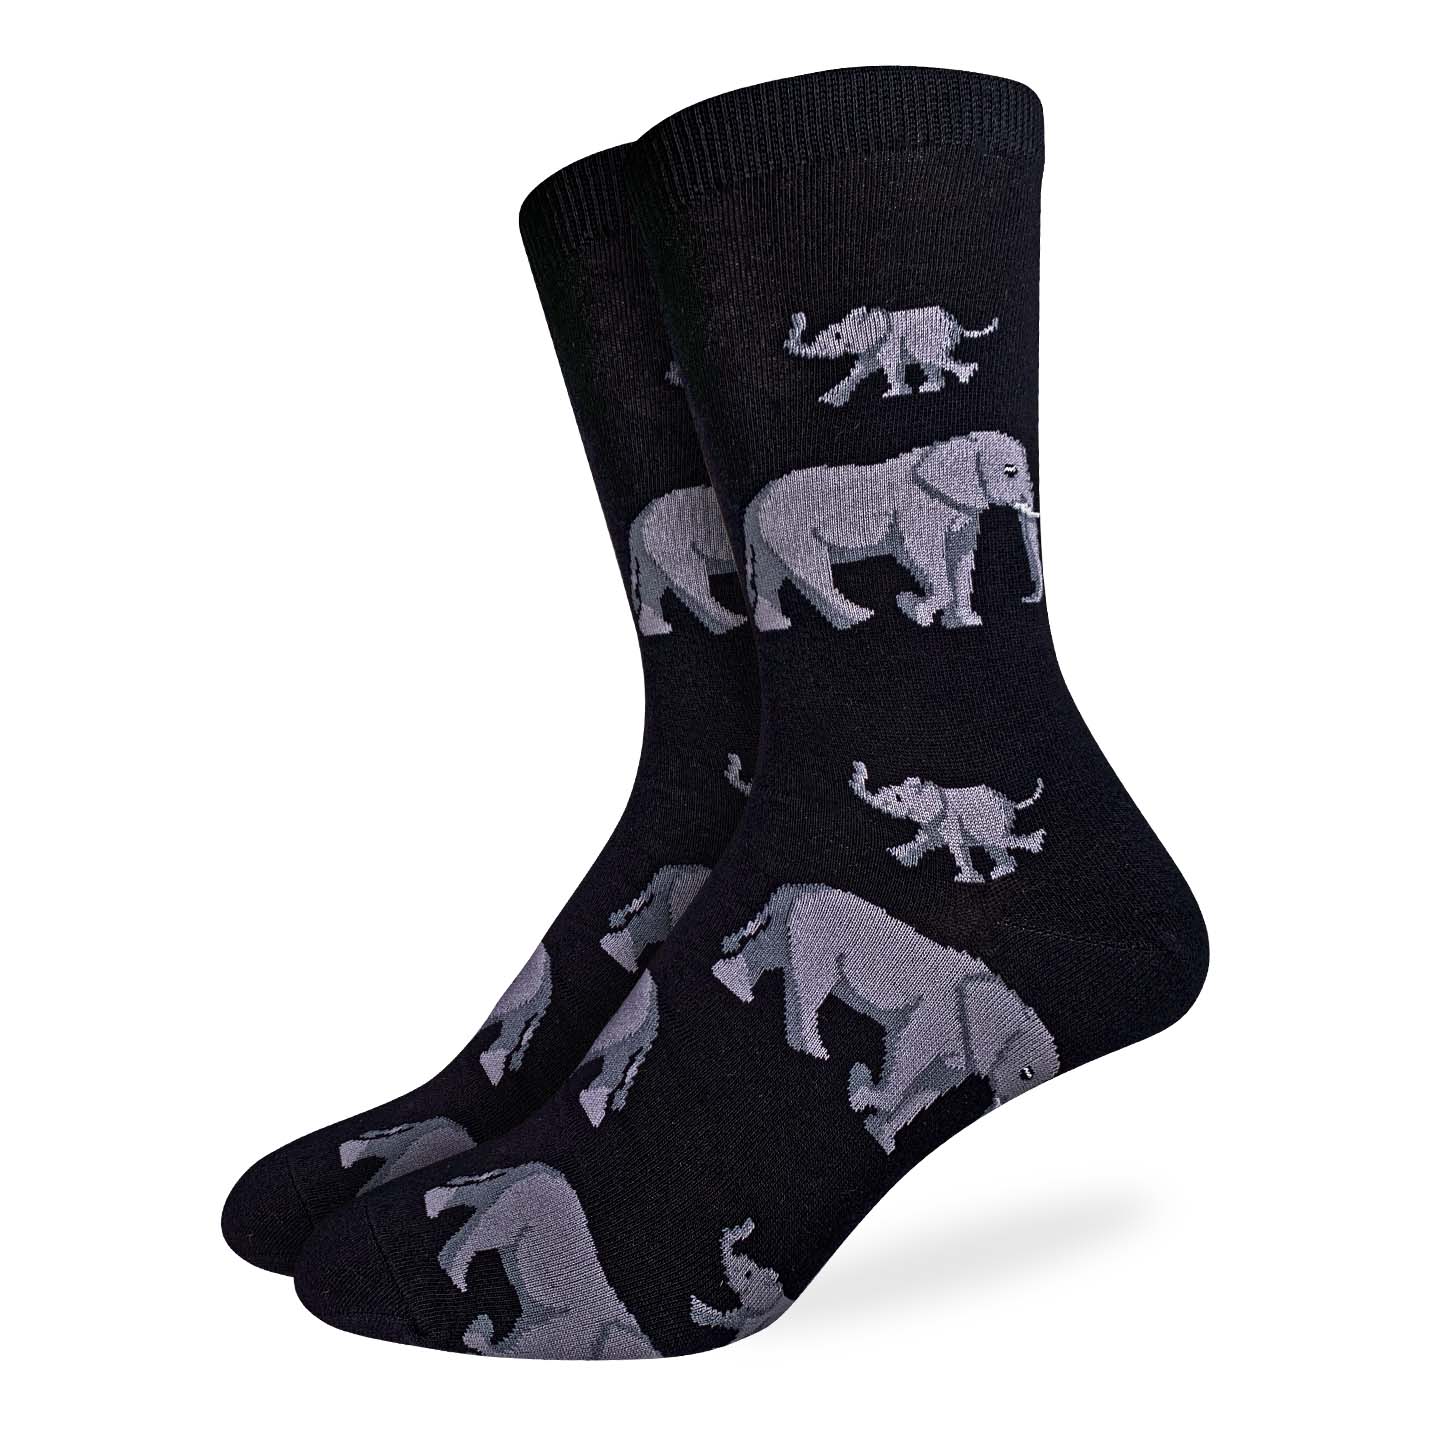 Good Luck Sock -Elephant Family Socks Men's